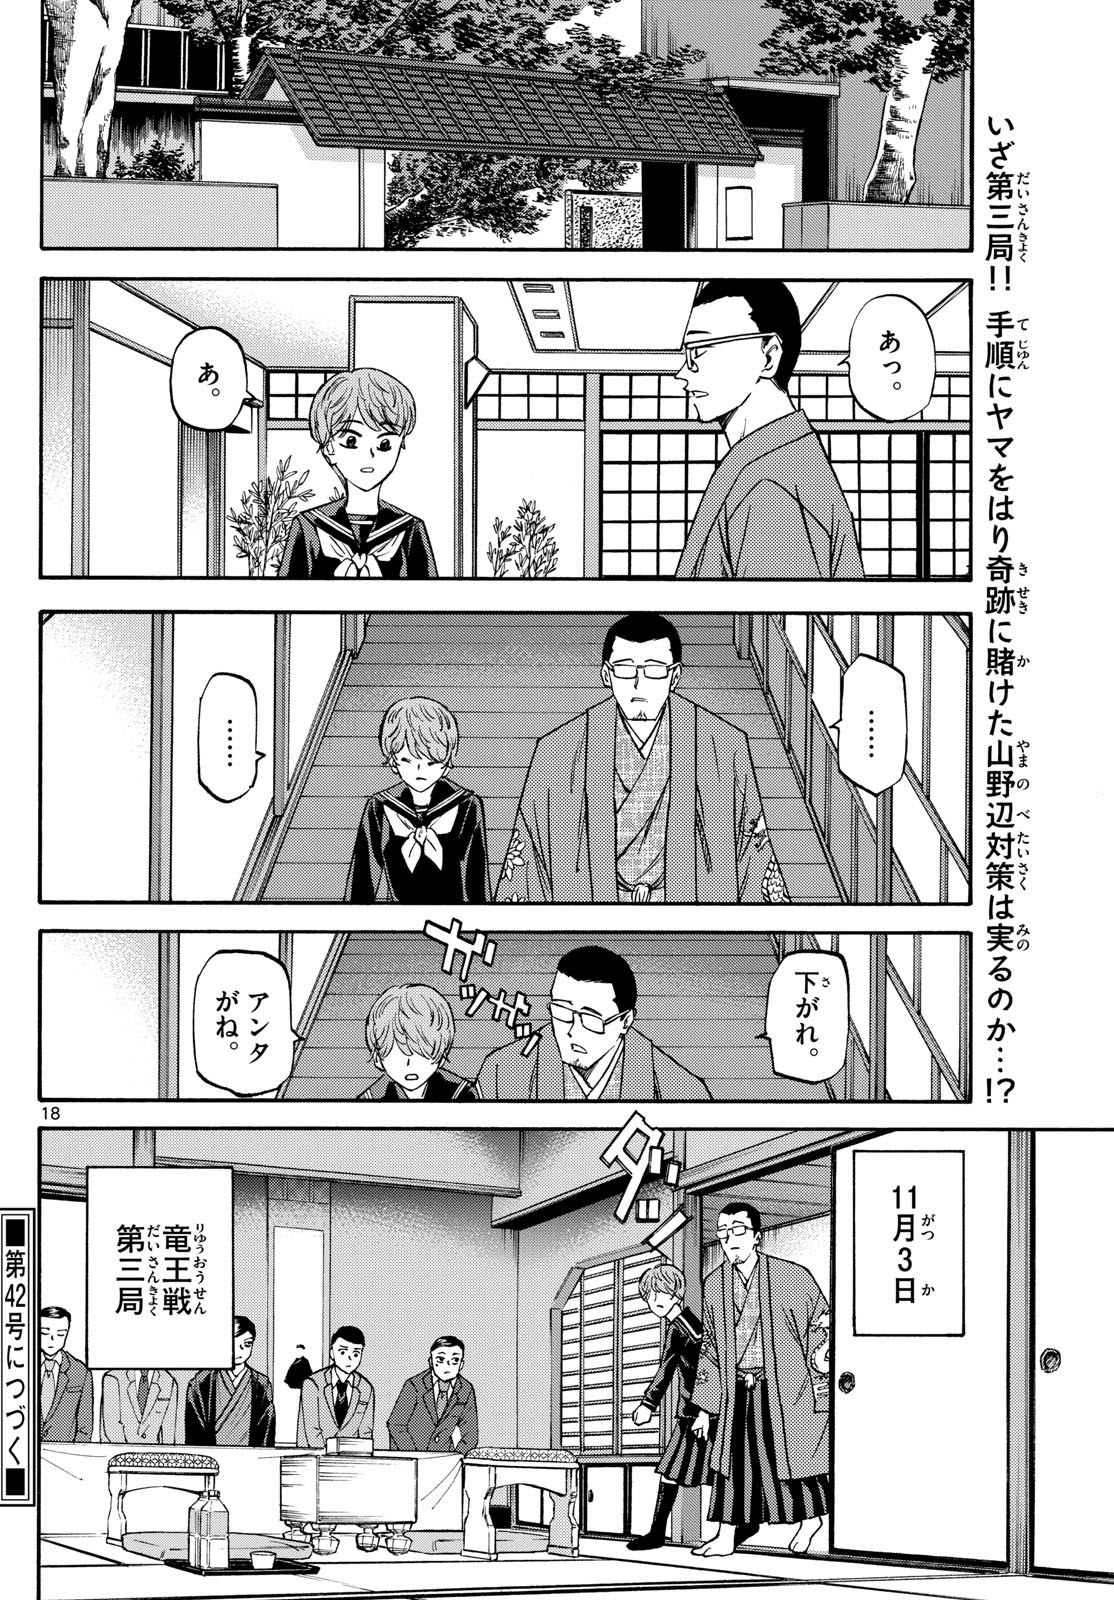 Ryu-to-Ichigo - Chapter 158 - Page 18